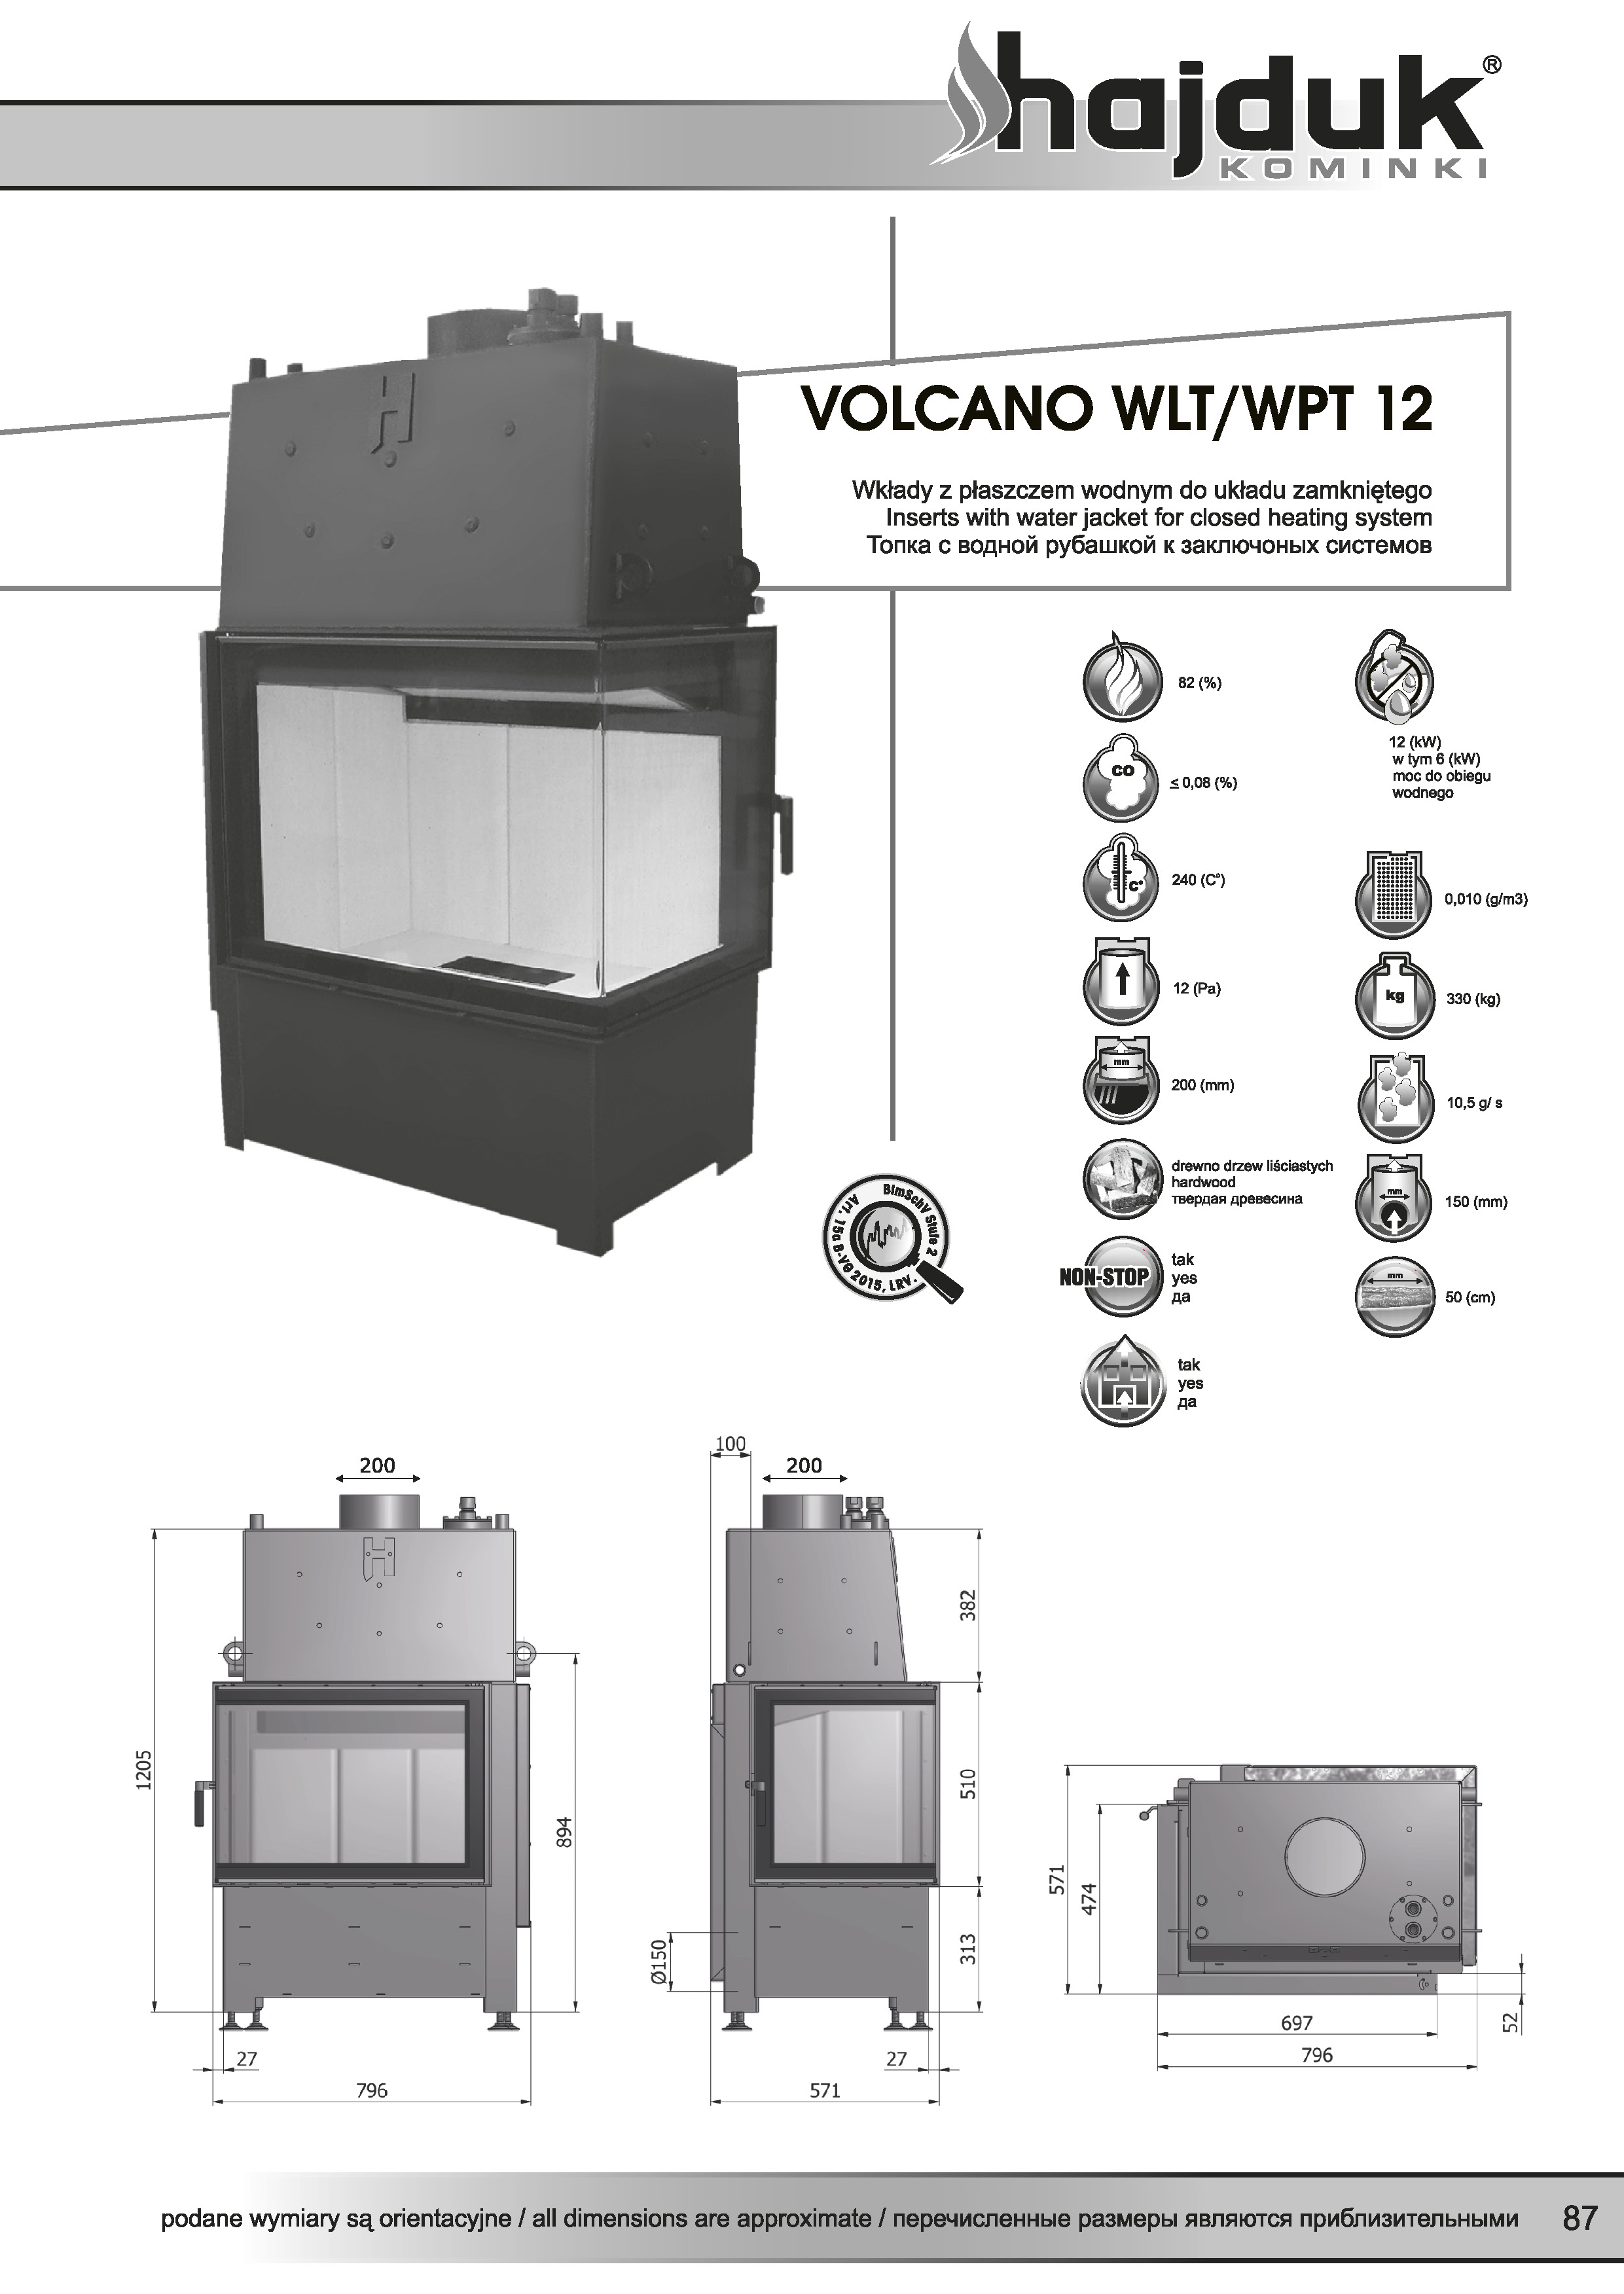 Volcano%20WLT%20WPT%20 %2012%20 %20karta%20techniczna - Wkład kominkowy Hajduk  Volcano WPT 12